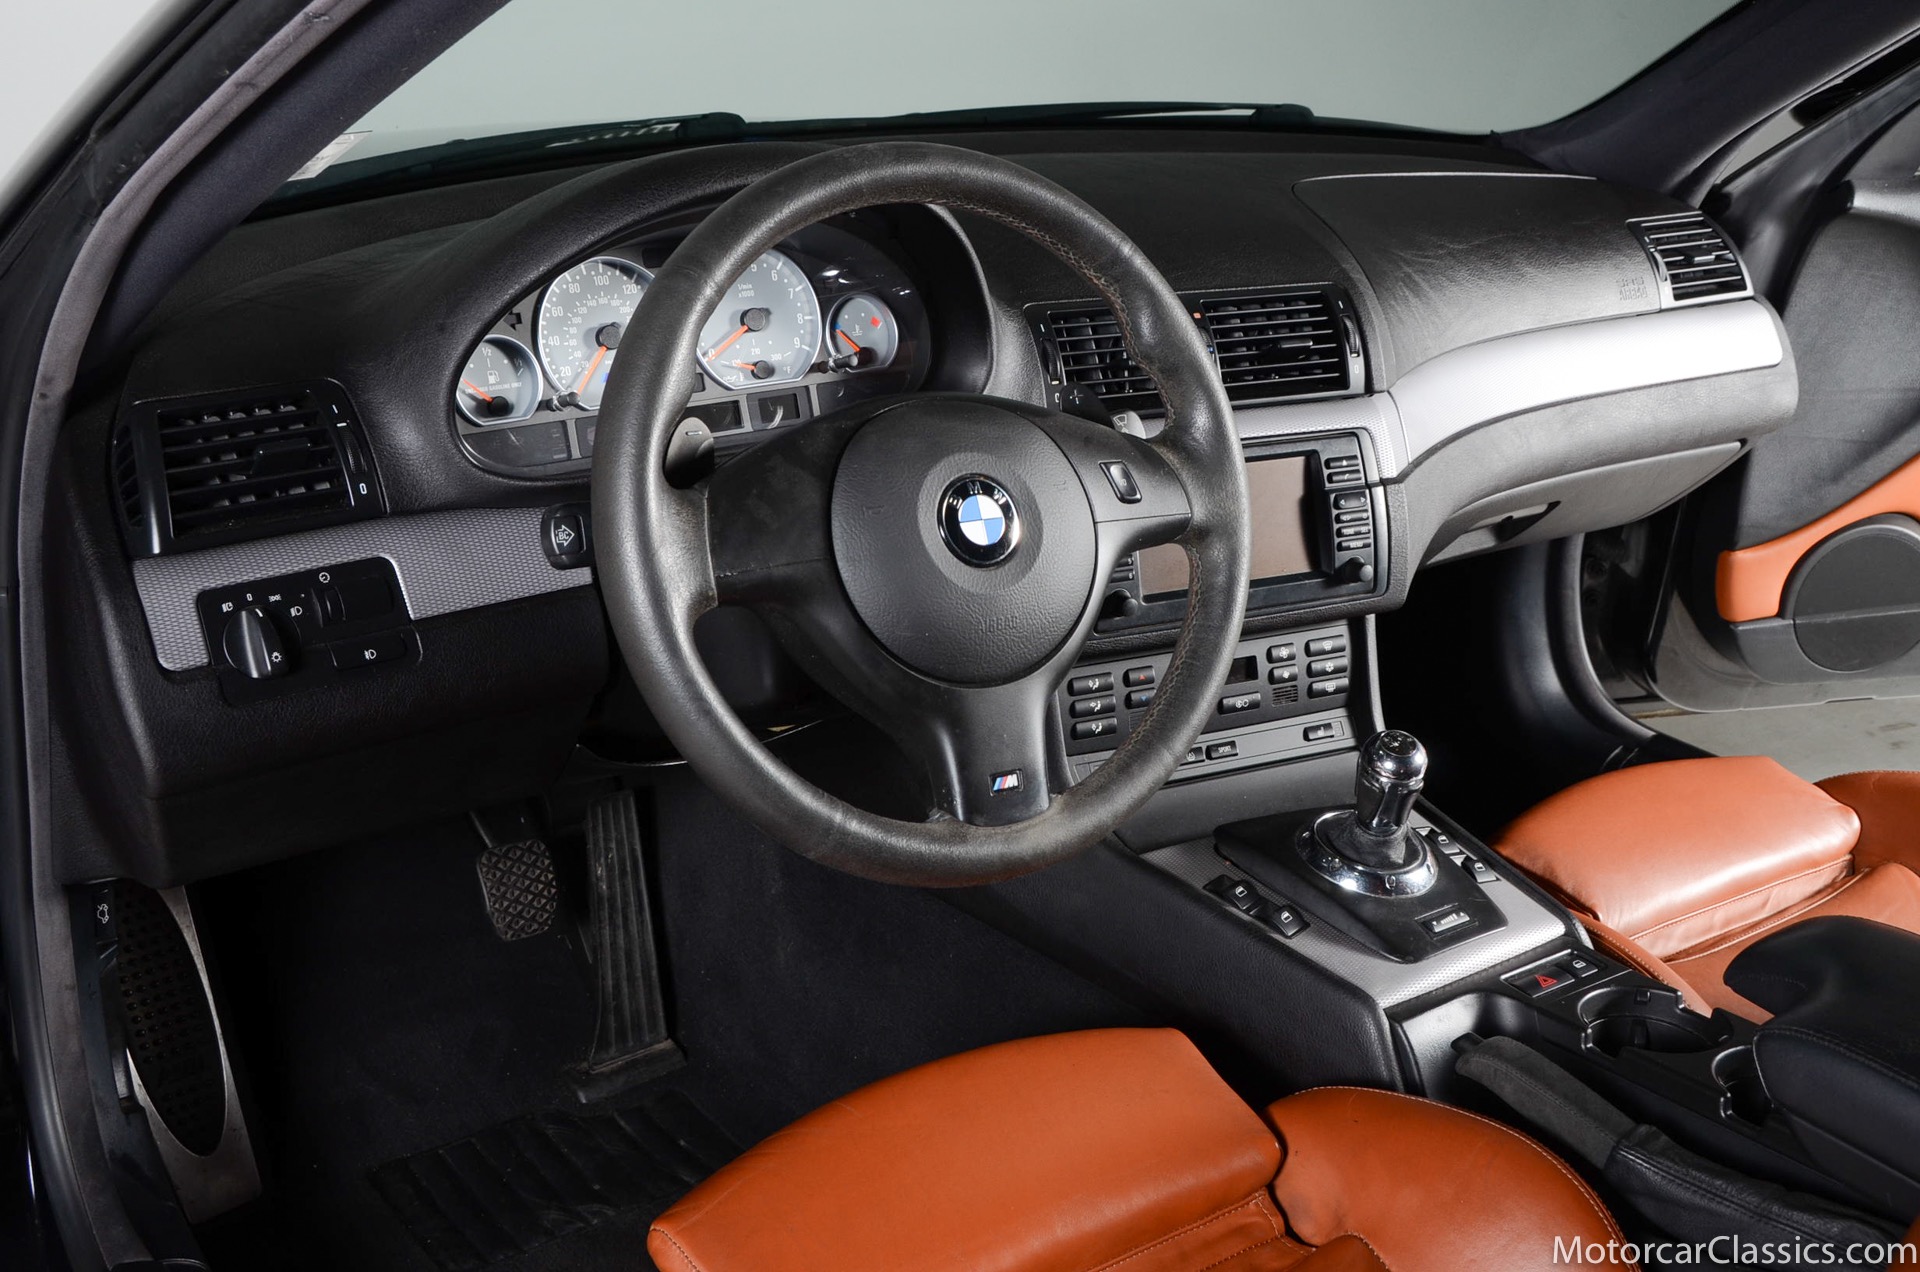 2005 BMW M3 